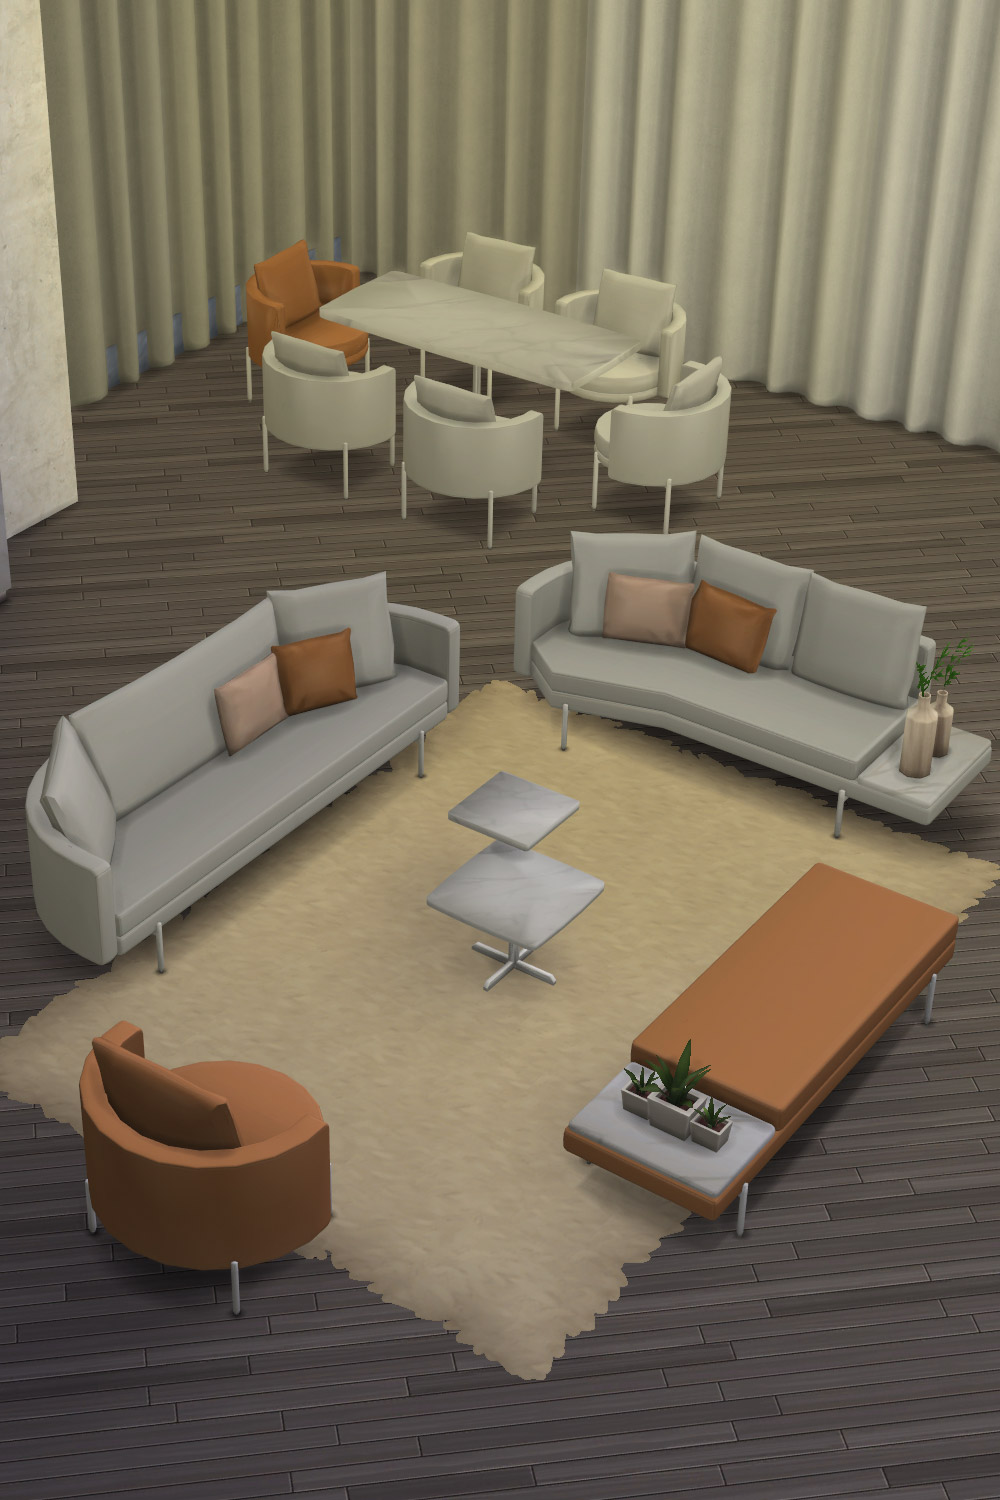 The Sims 4 CC Furniture Sofa Set